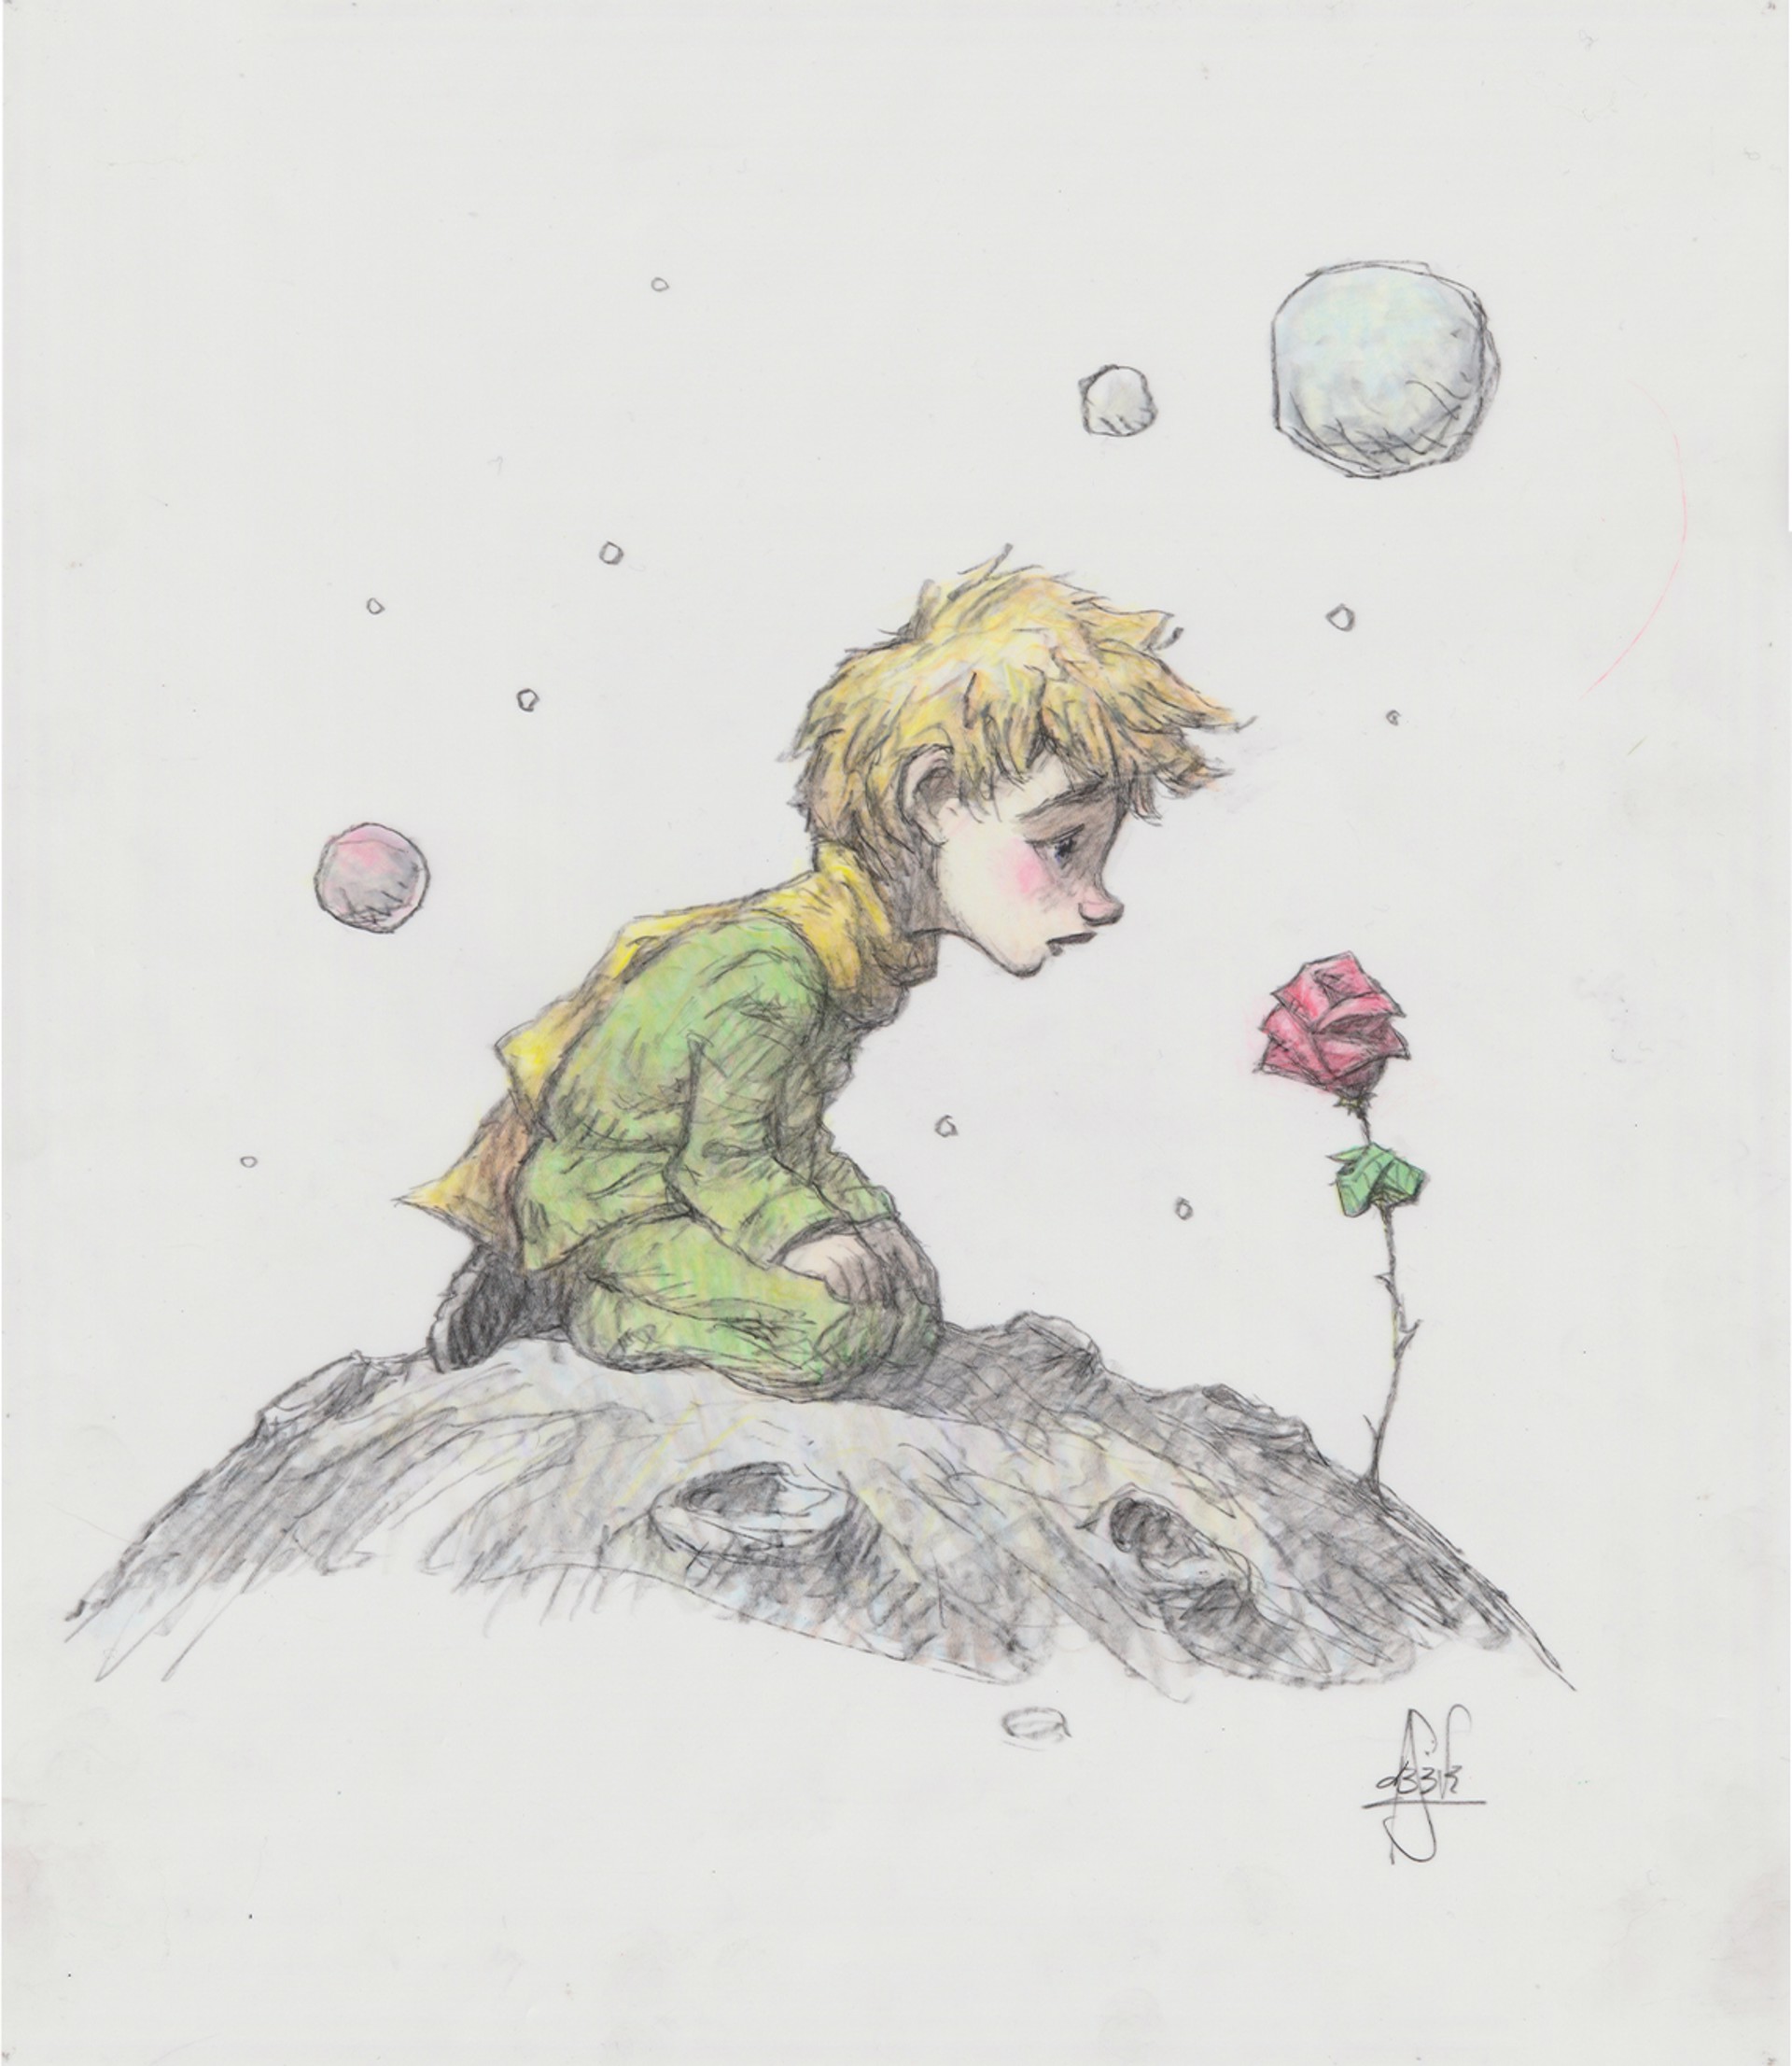 The Little Prince, Planets by Peter de Sève